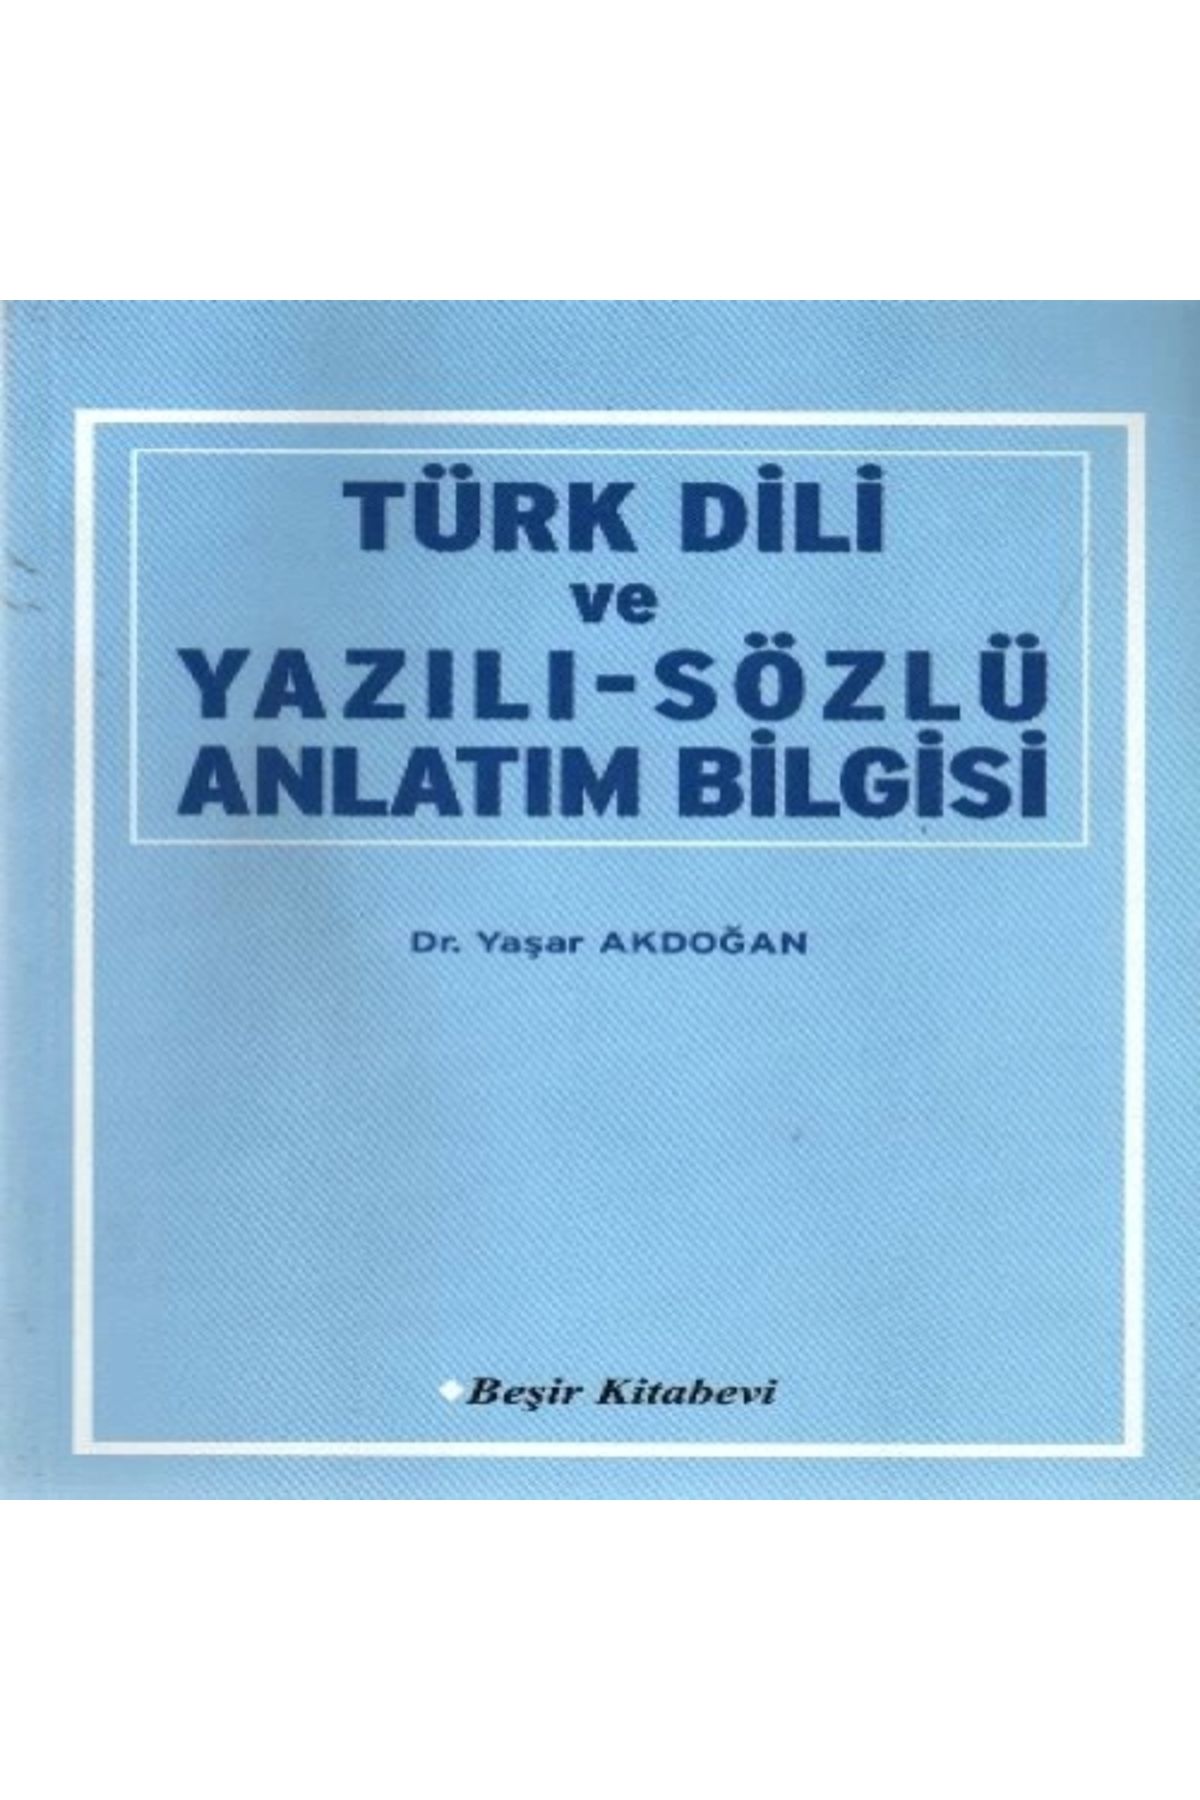 Beşir Kitabevi Türk Dili ve Yazılı-Sözlü Anlatım Bilgisi